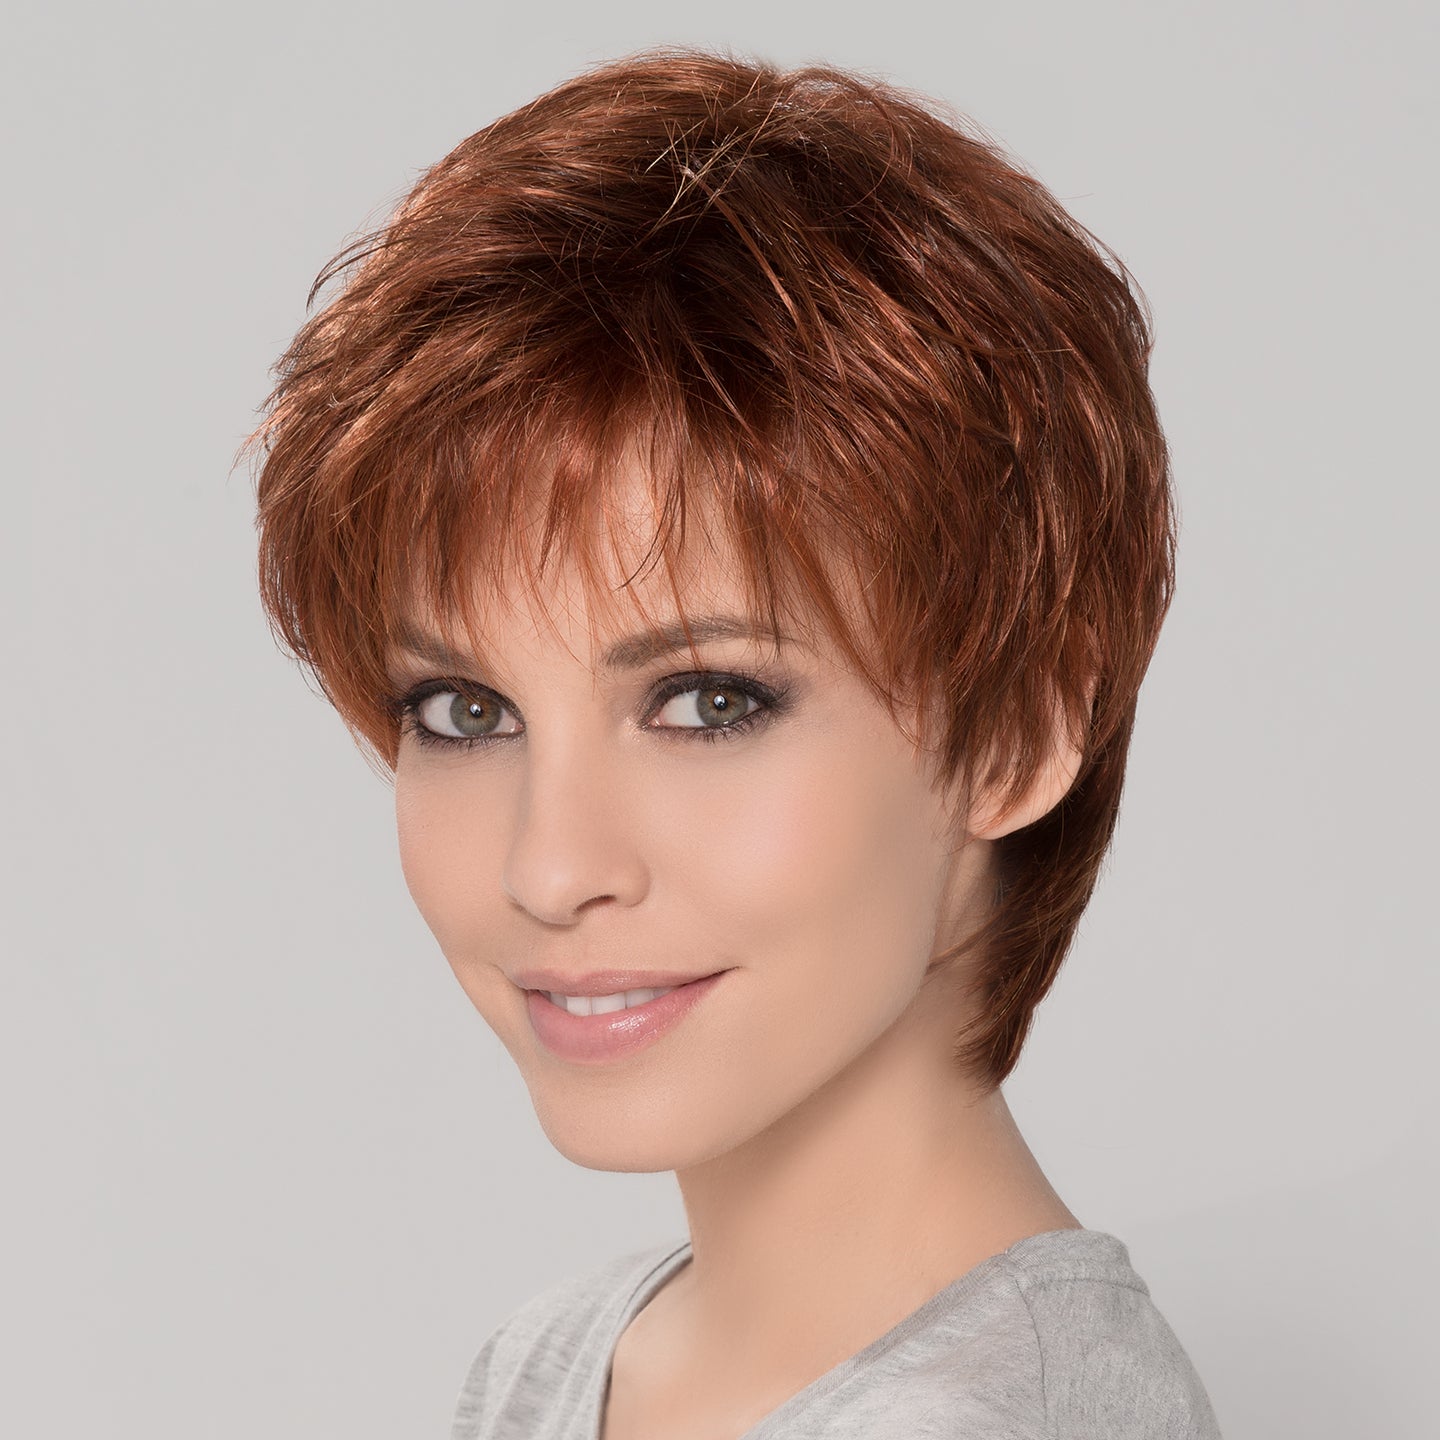 Ivy Wig - Ellen Wille HairPower Collection